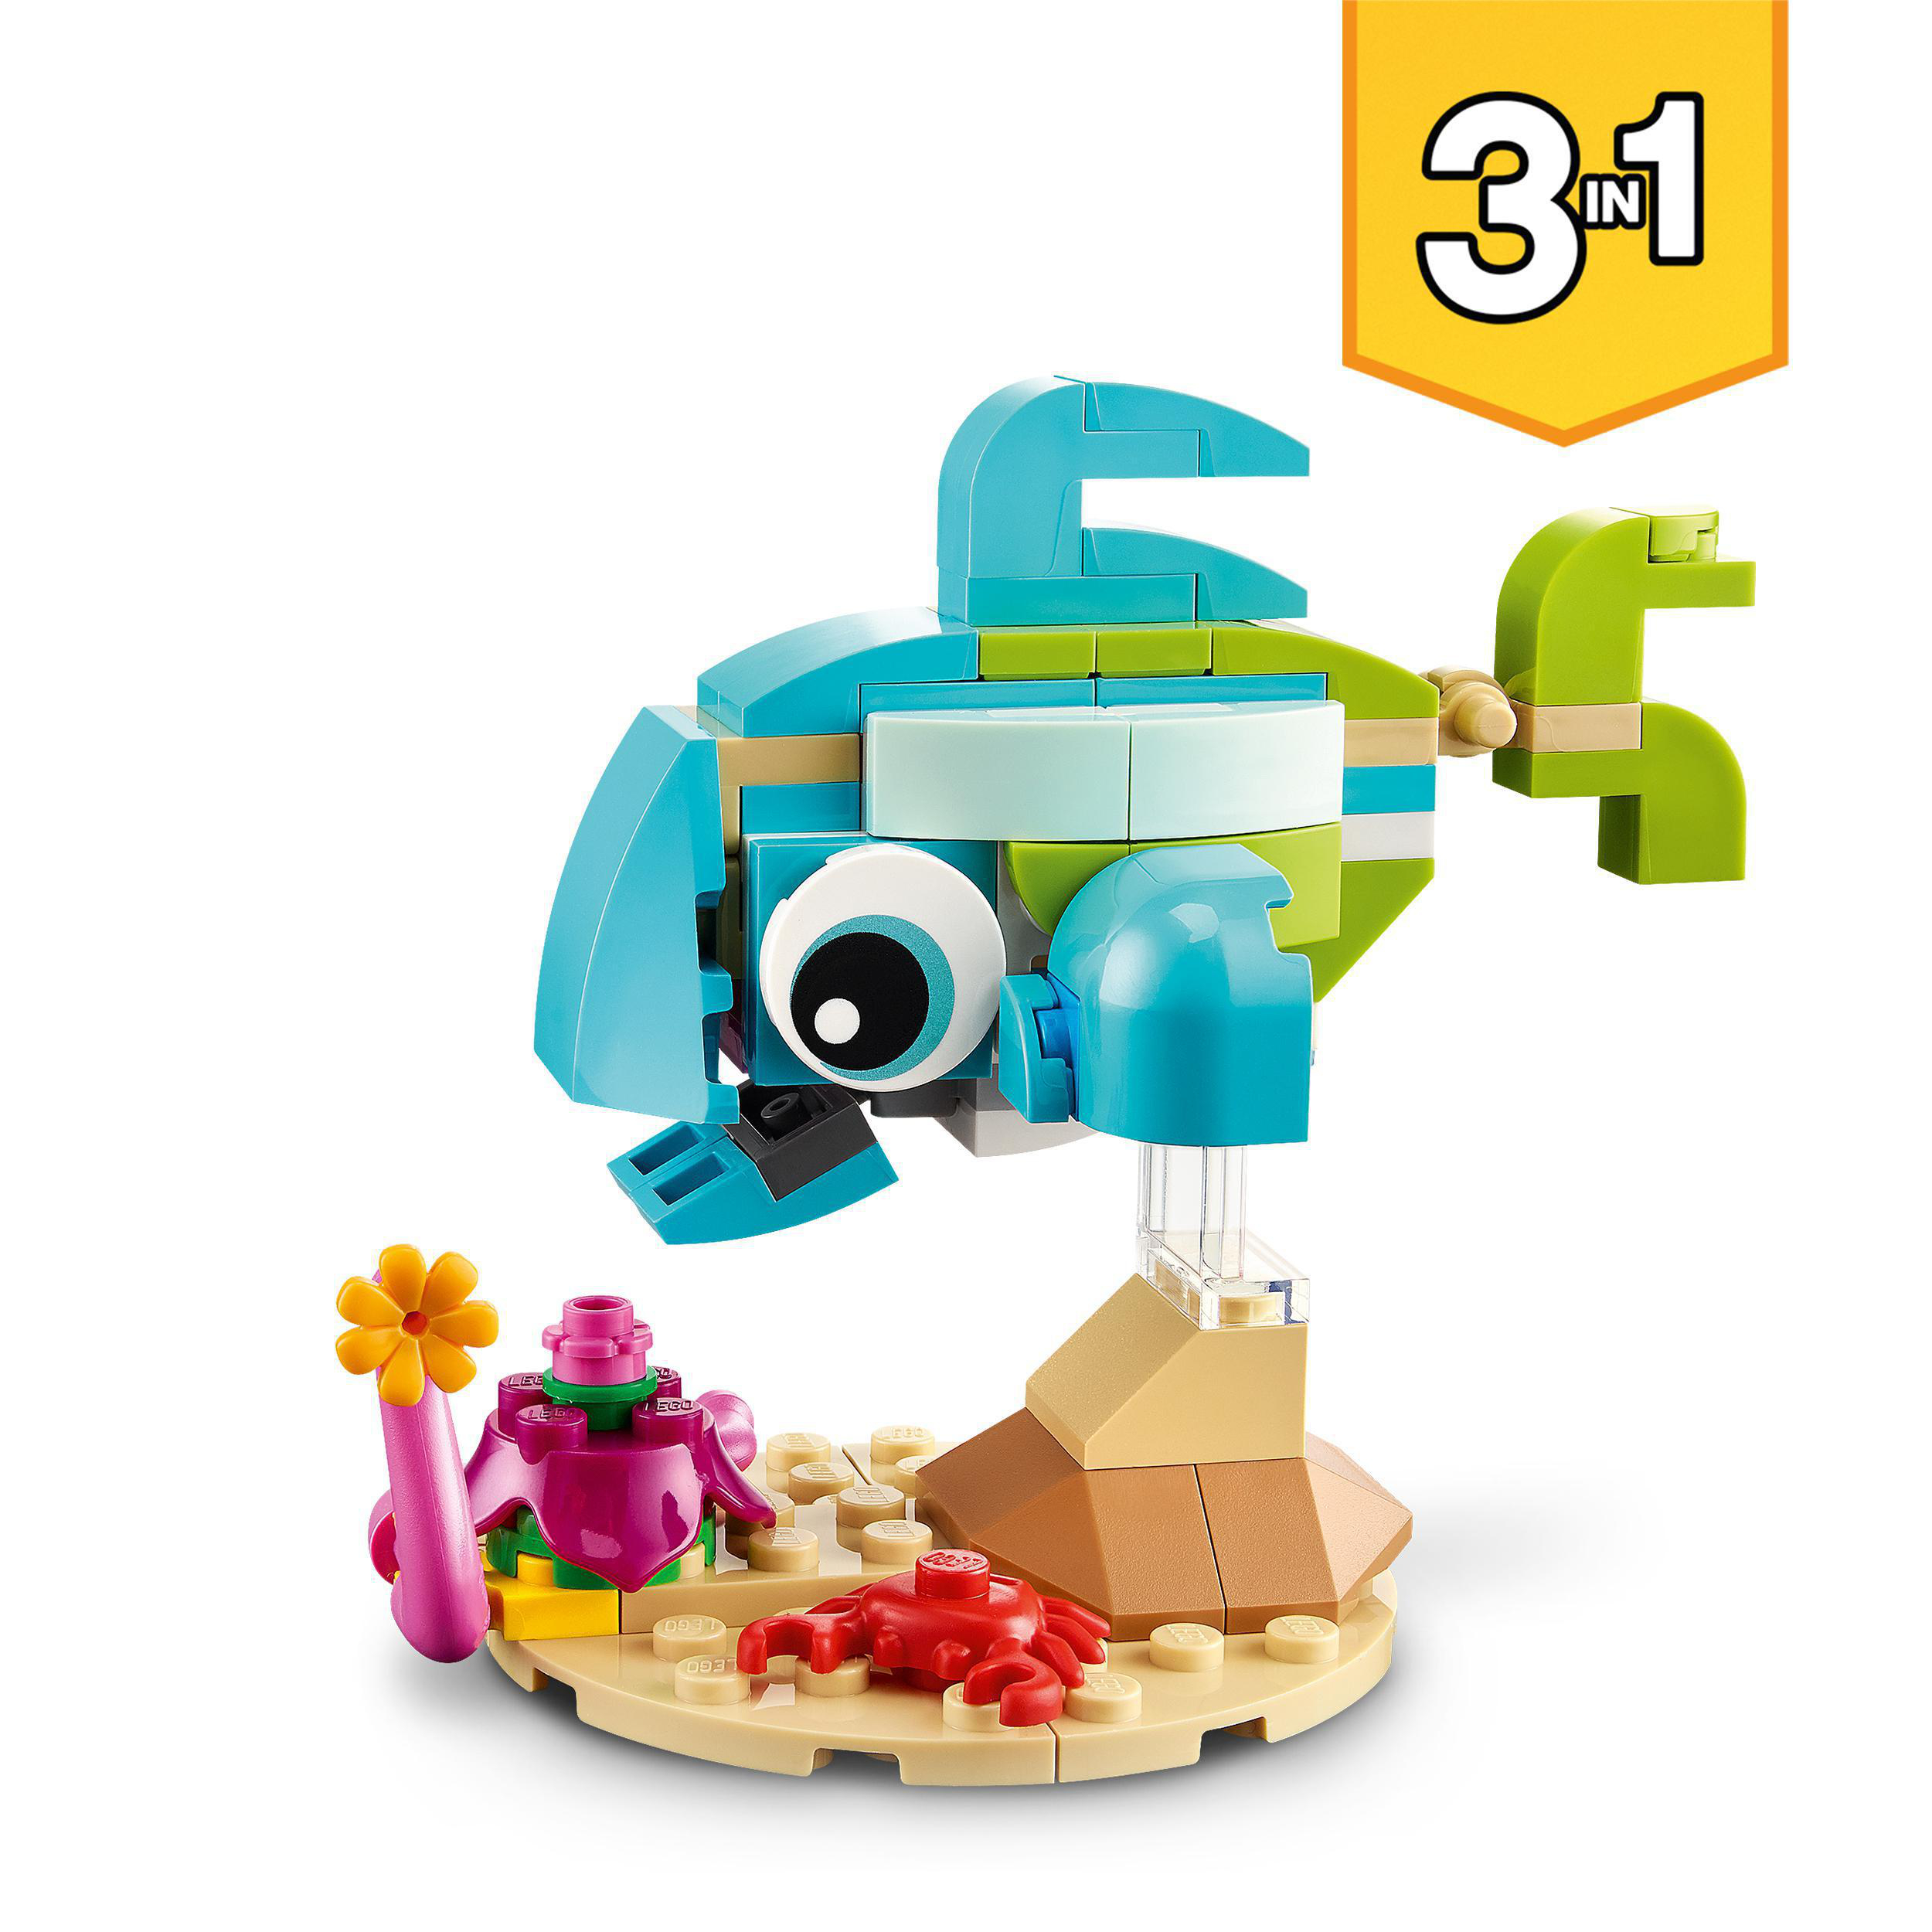 LEGO Creator 31128 Delfin und Schildkröte Mehrfarbig Bausatz